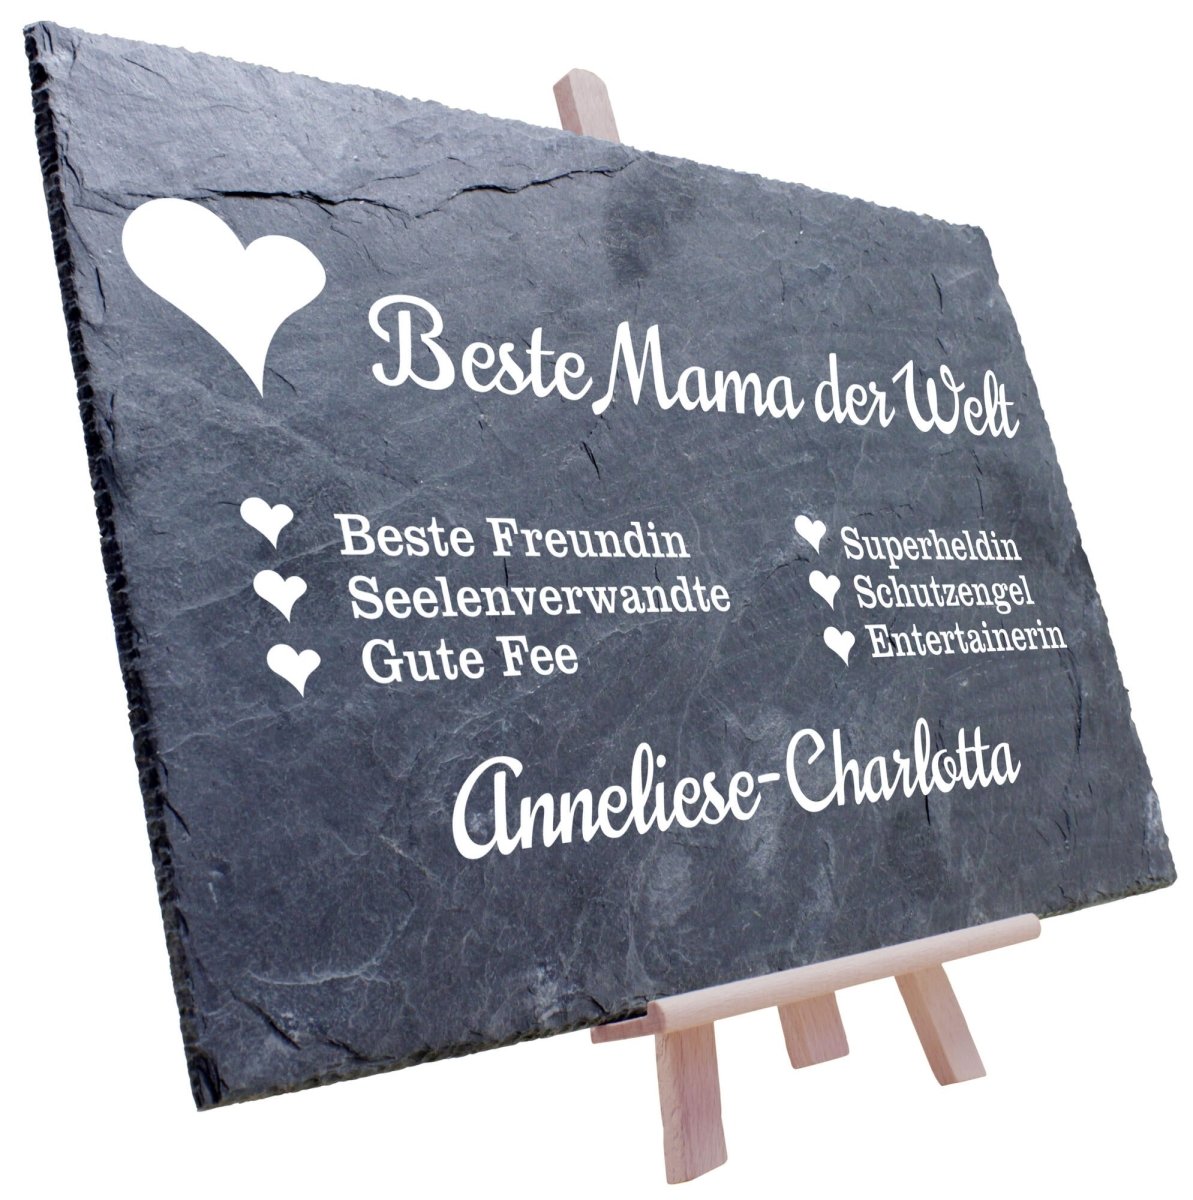 Schiefertafel Beste Mama der Welt M0057 - meinleinwand.de